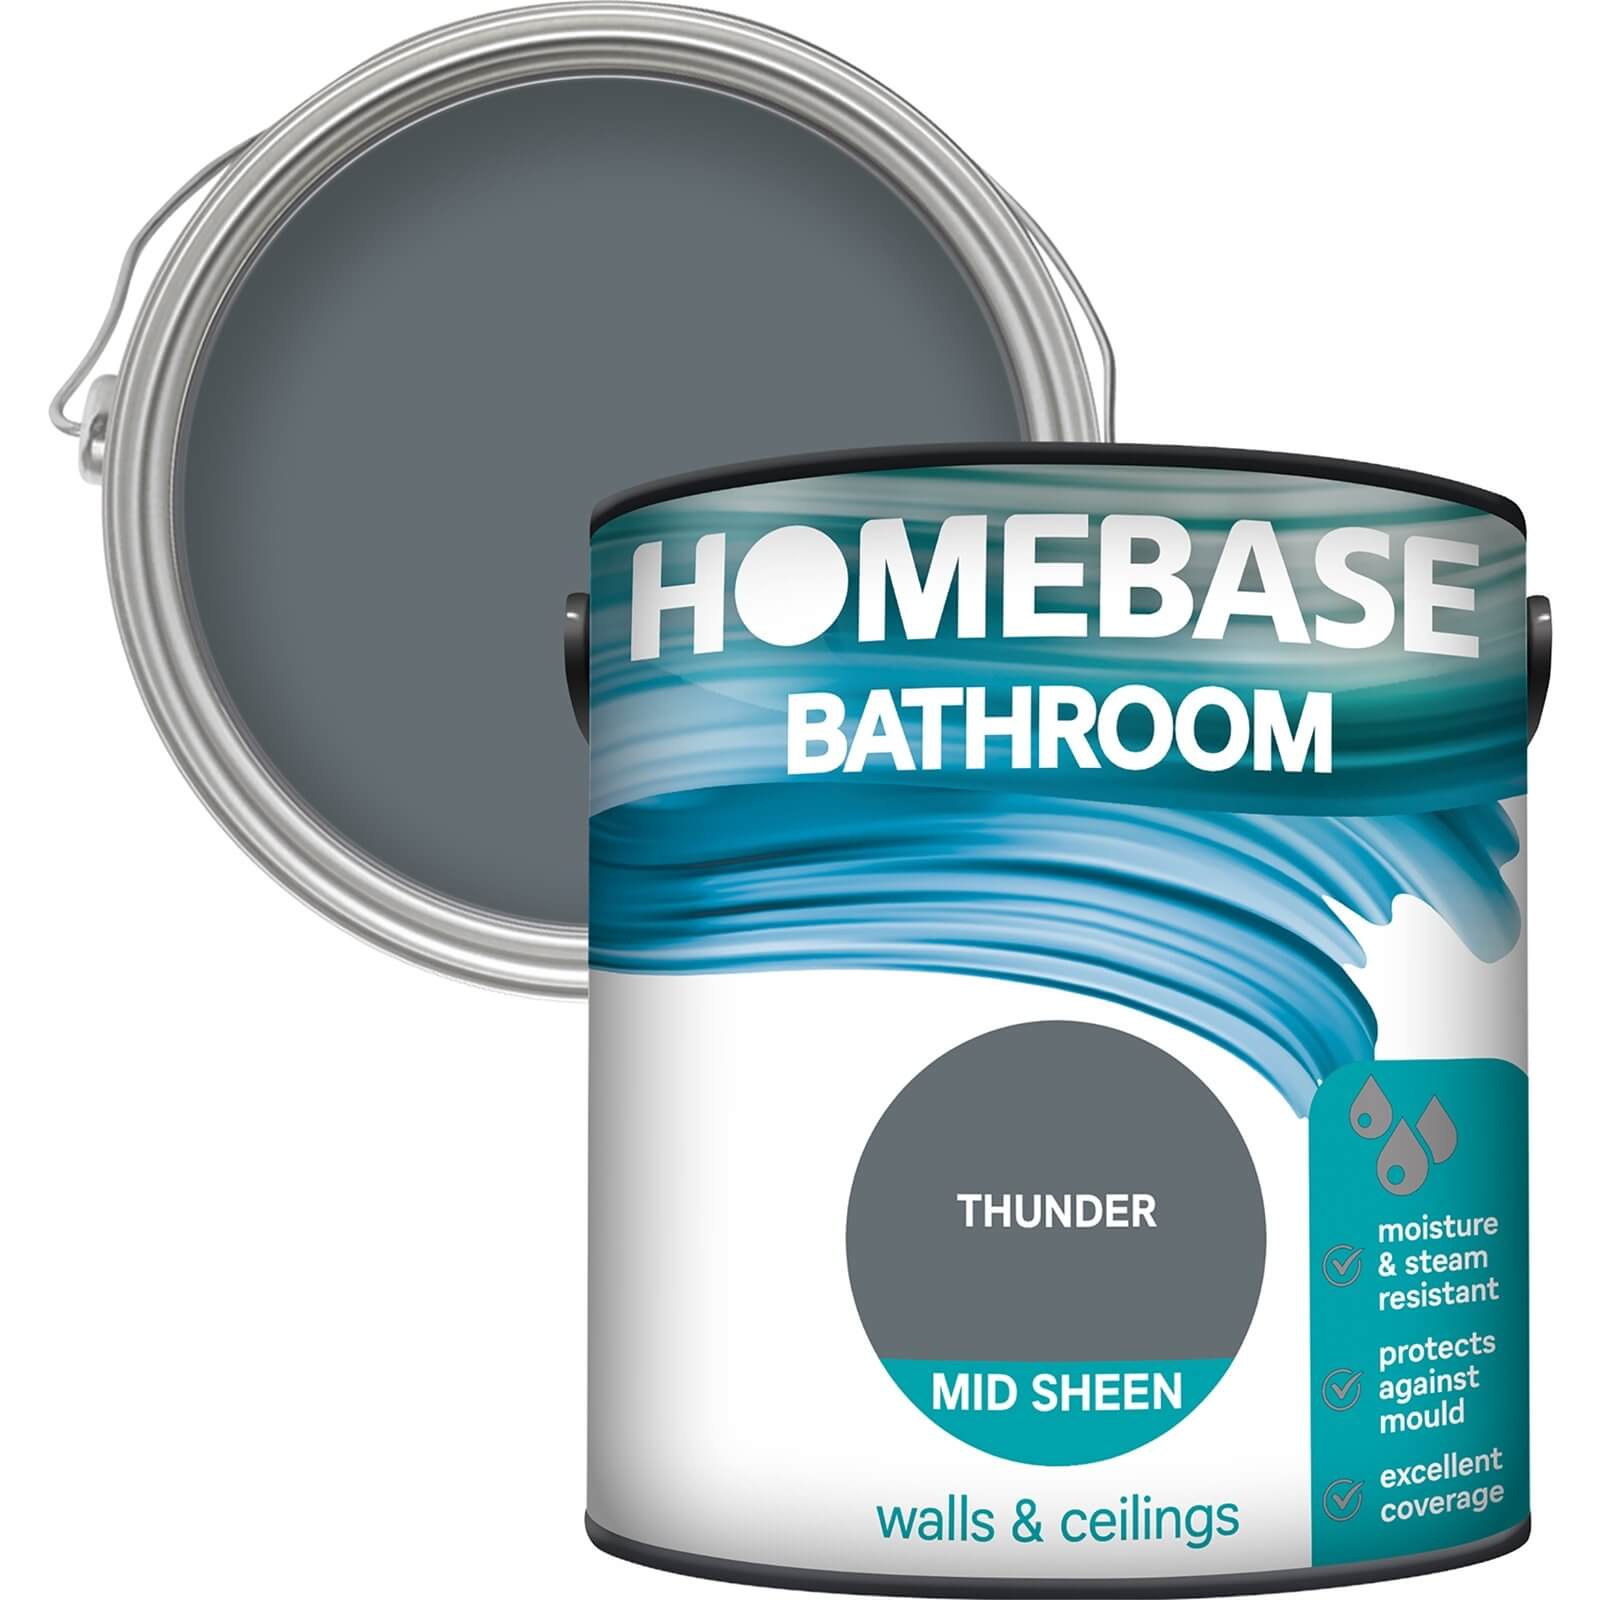 Homebase Bathroom Mid Sheen Paint - Thunder 2.5L